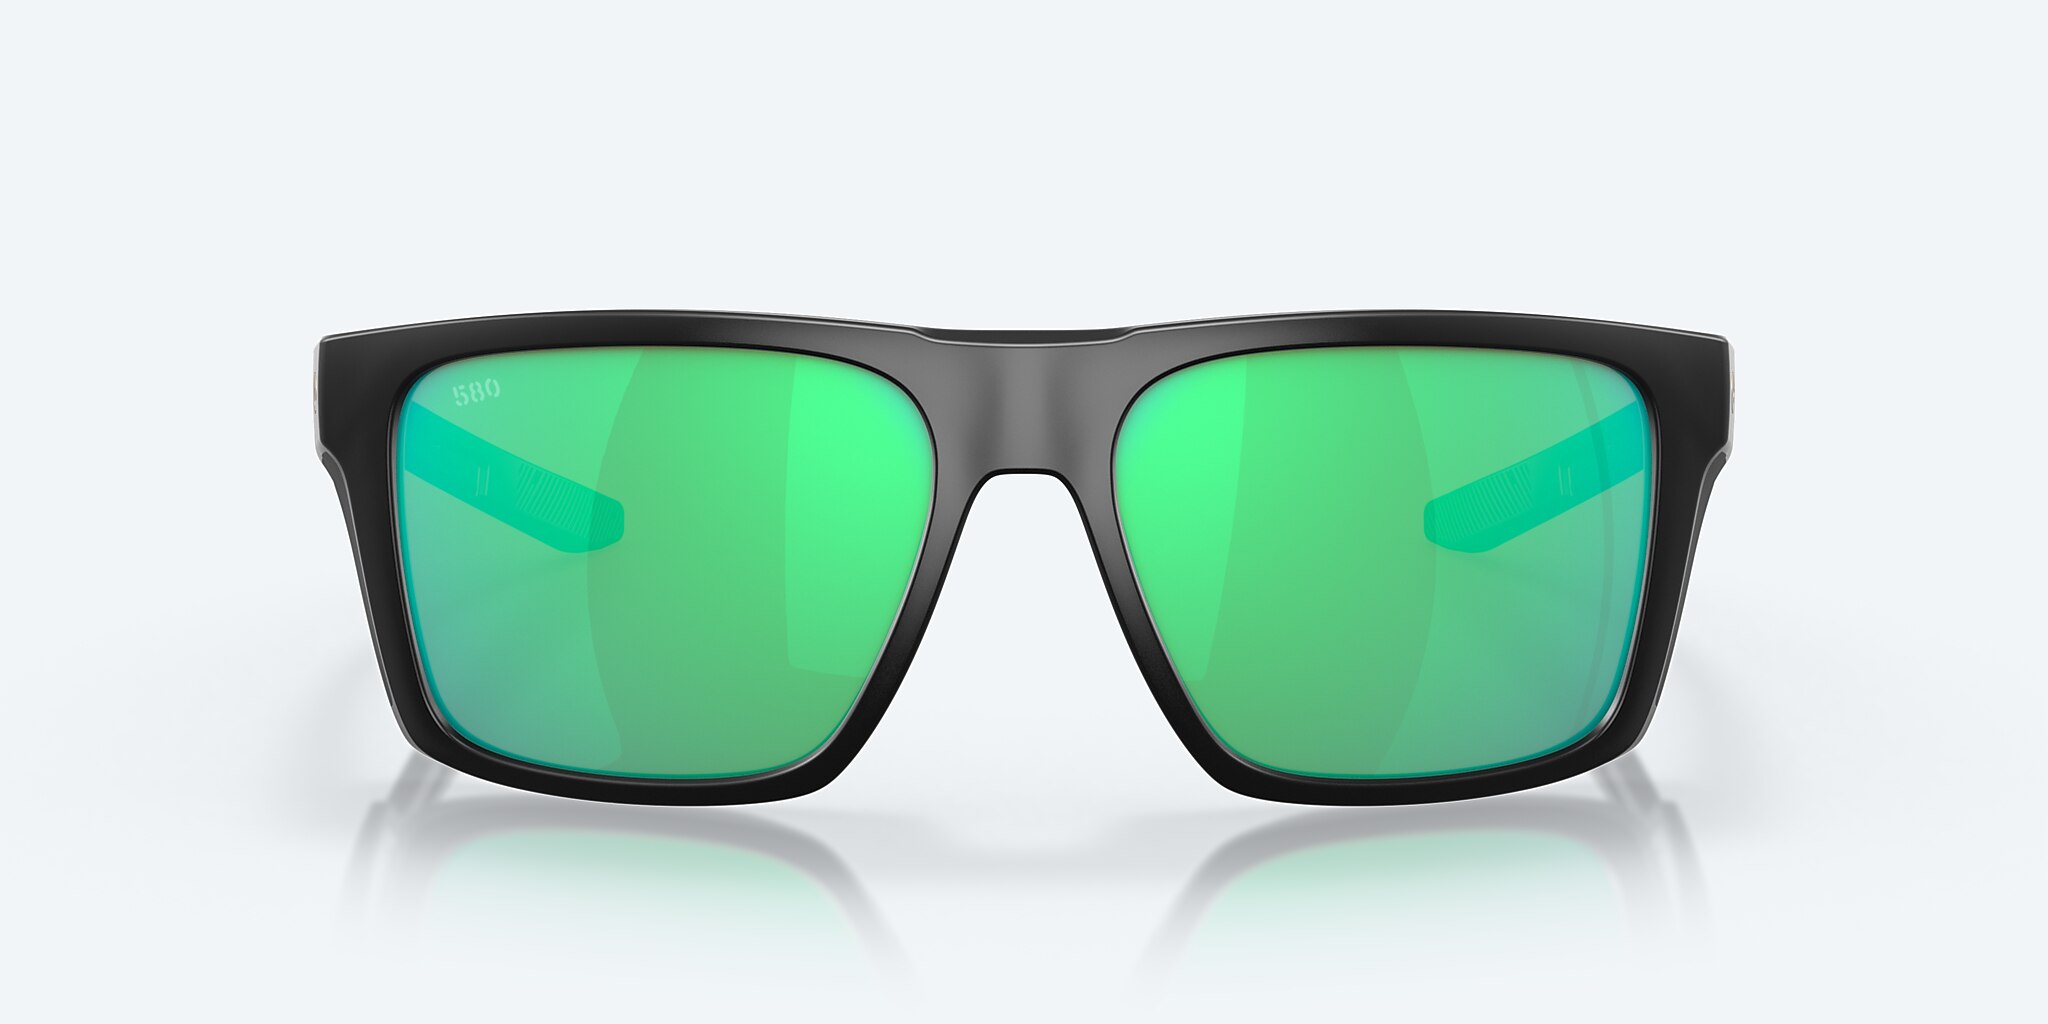  Green Mirrored Sunglasses